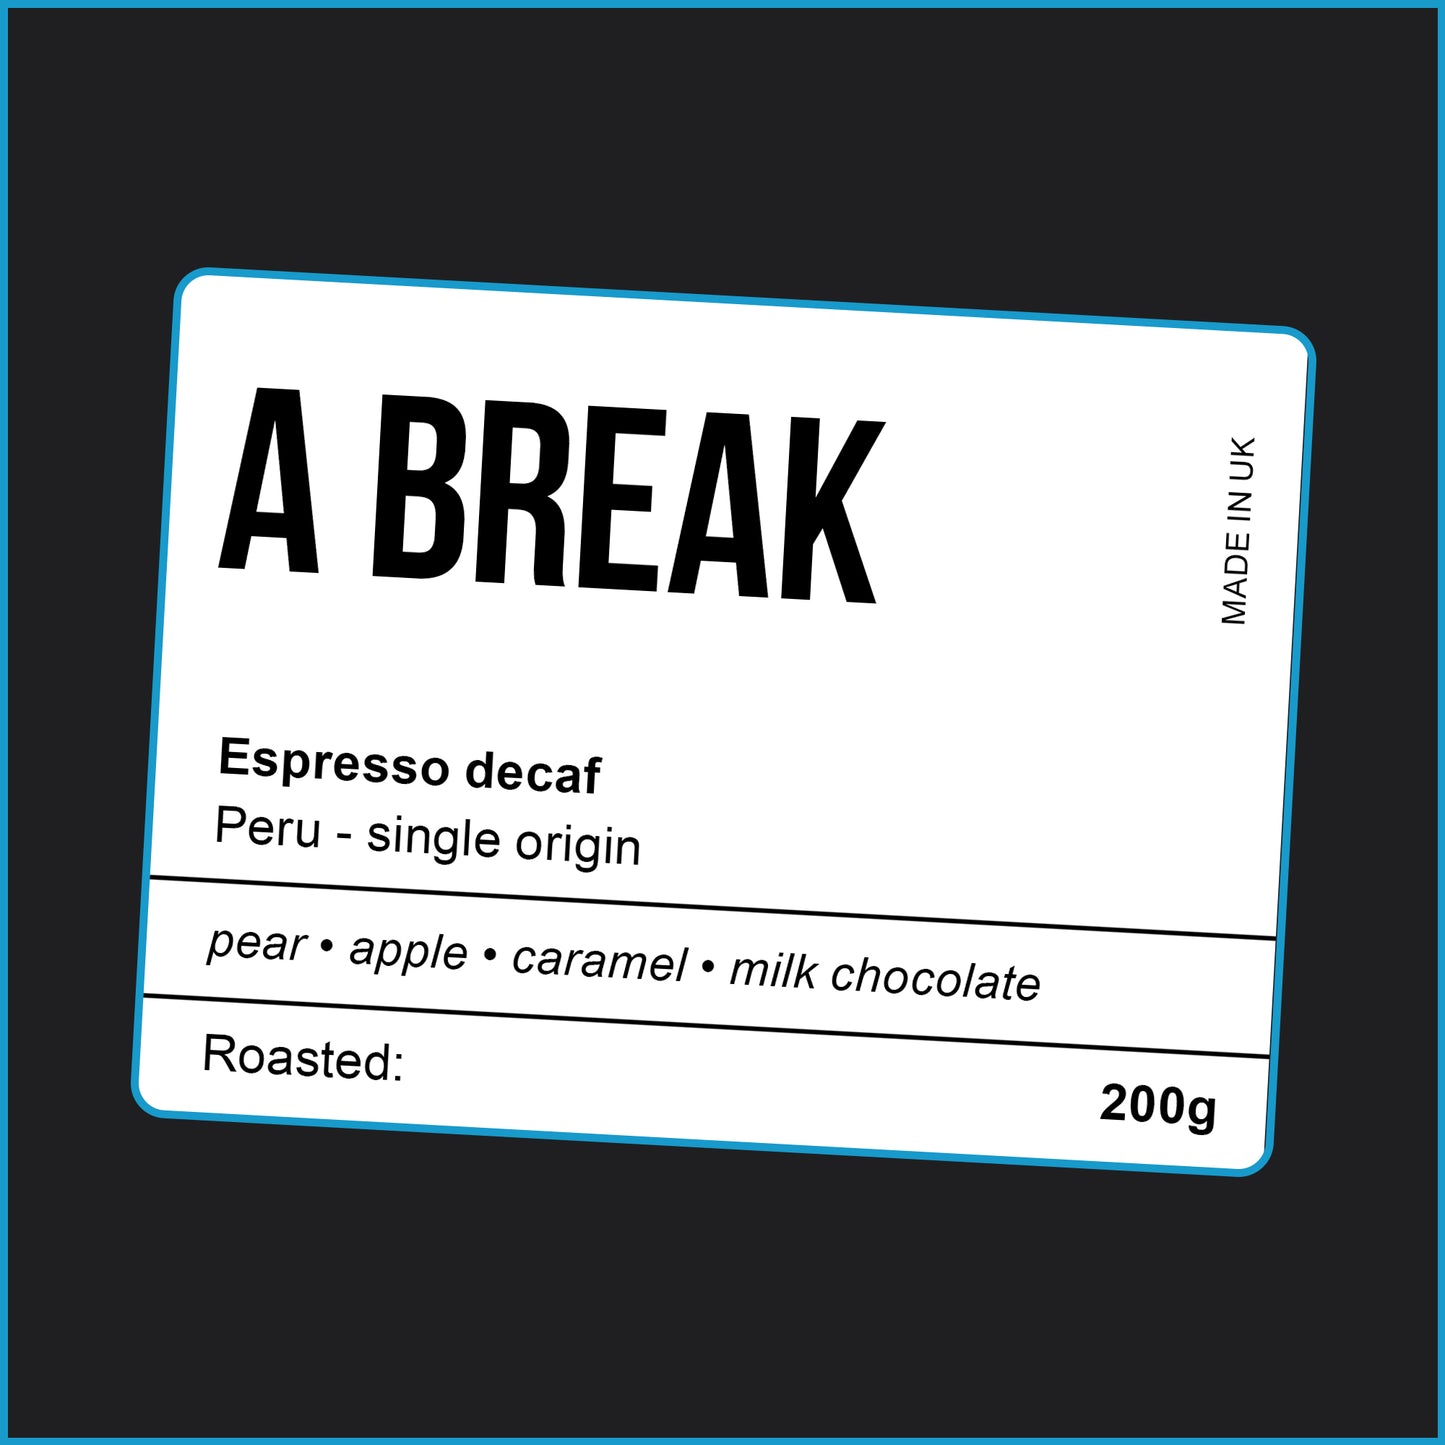 A BREAK (decaf)